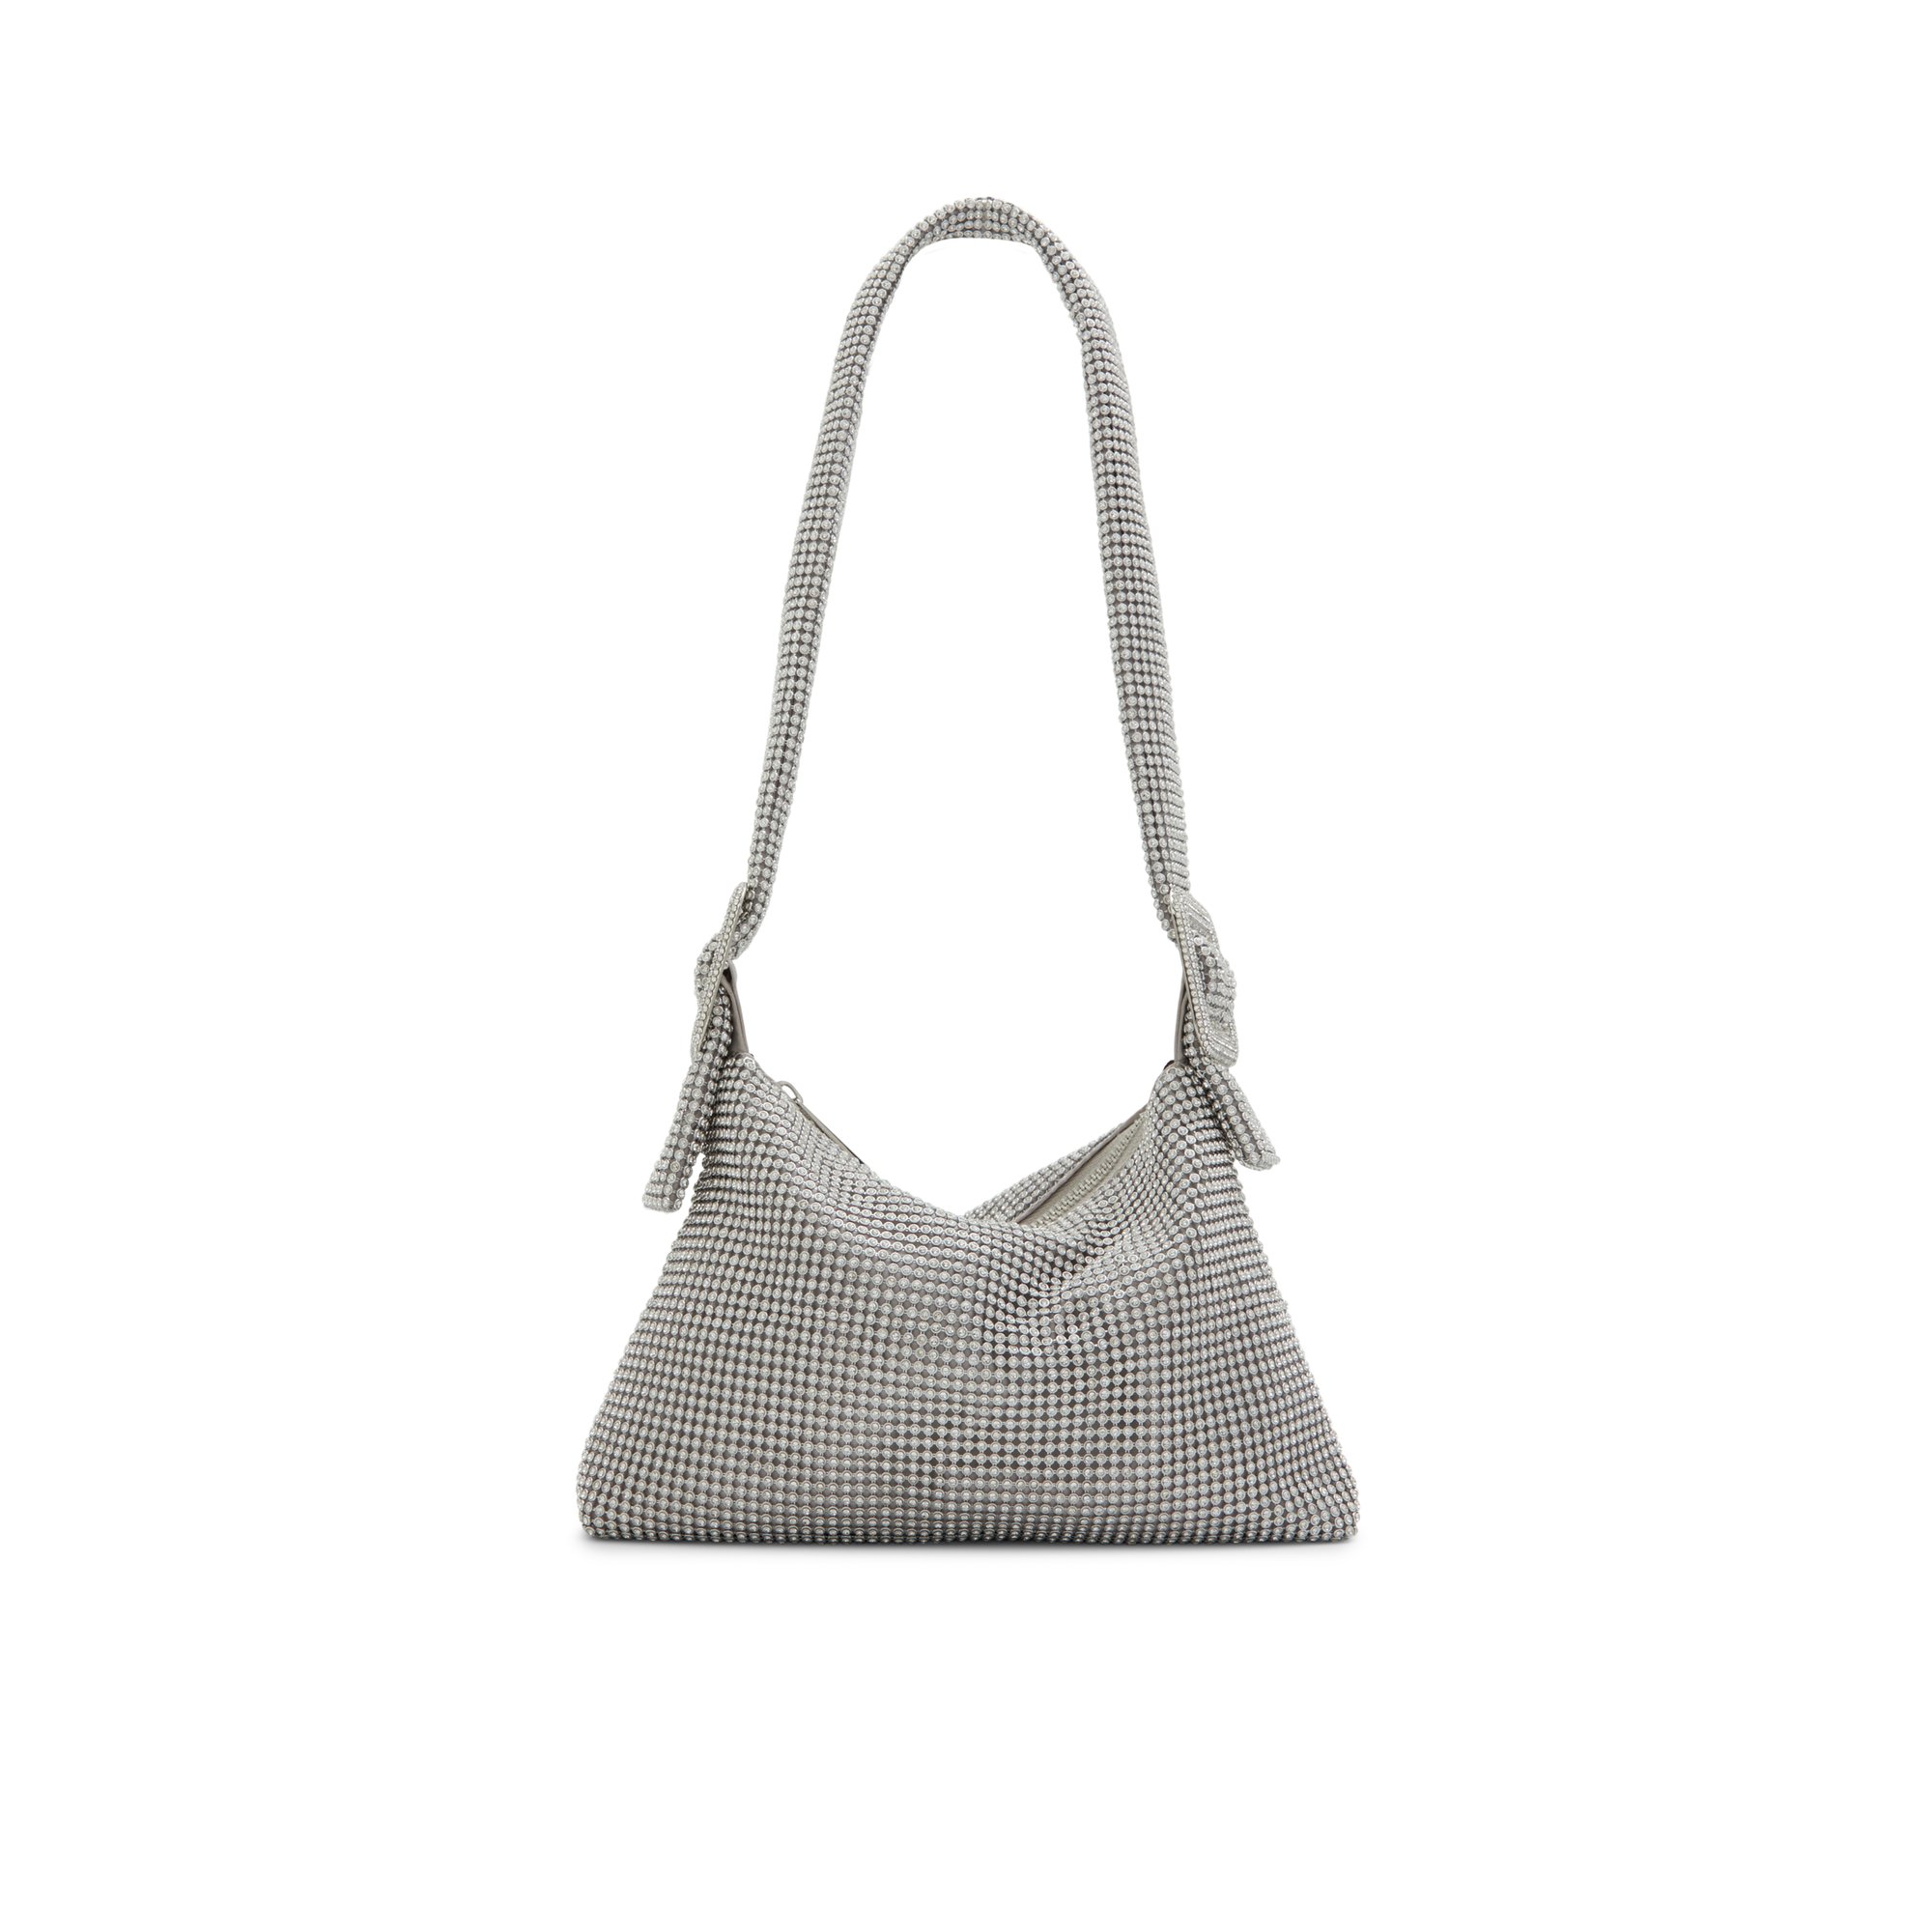 ALDO Banalia - Women's Handbags Shoulder Bags - Silver